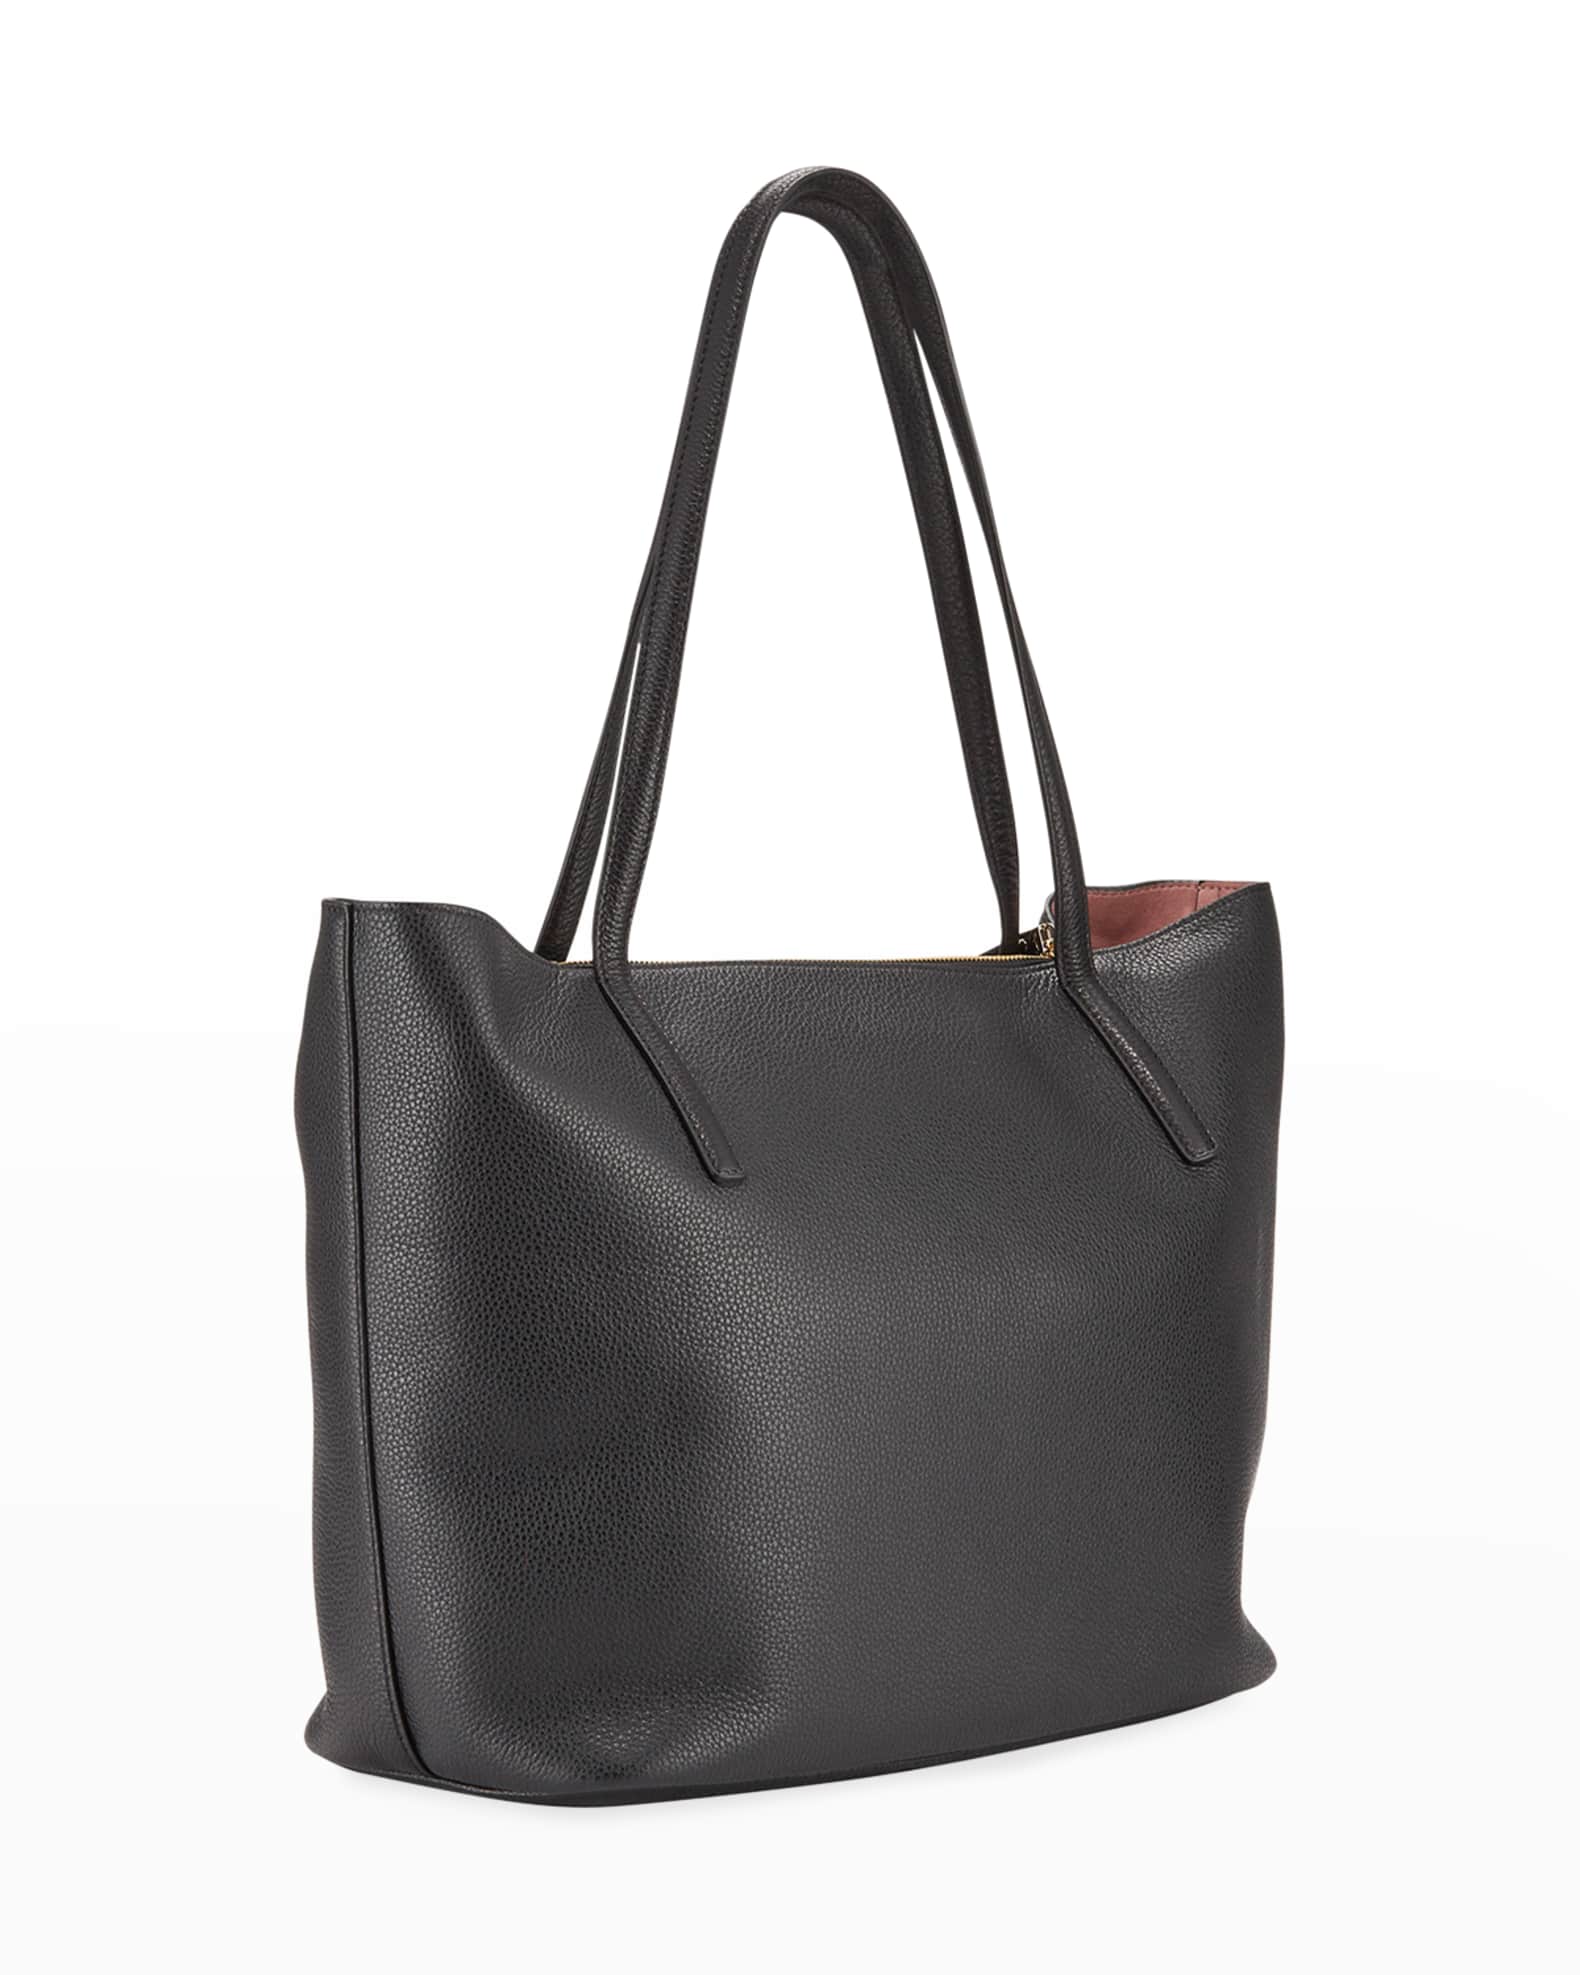 Salvatore Ferragamo City Medium Leather Shoulder Tote Bag | Neiman Marcus